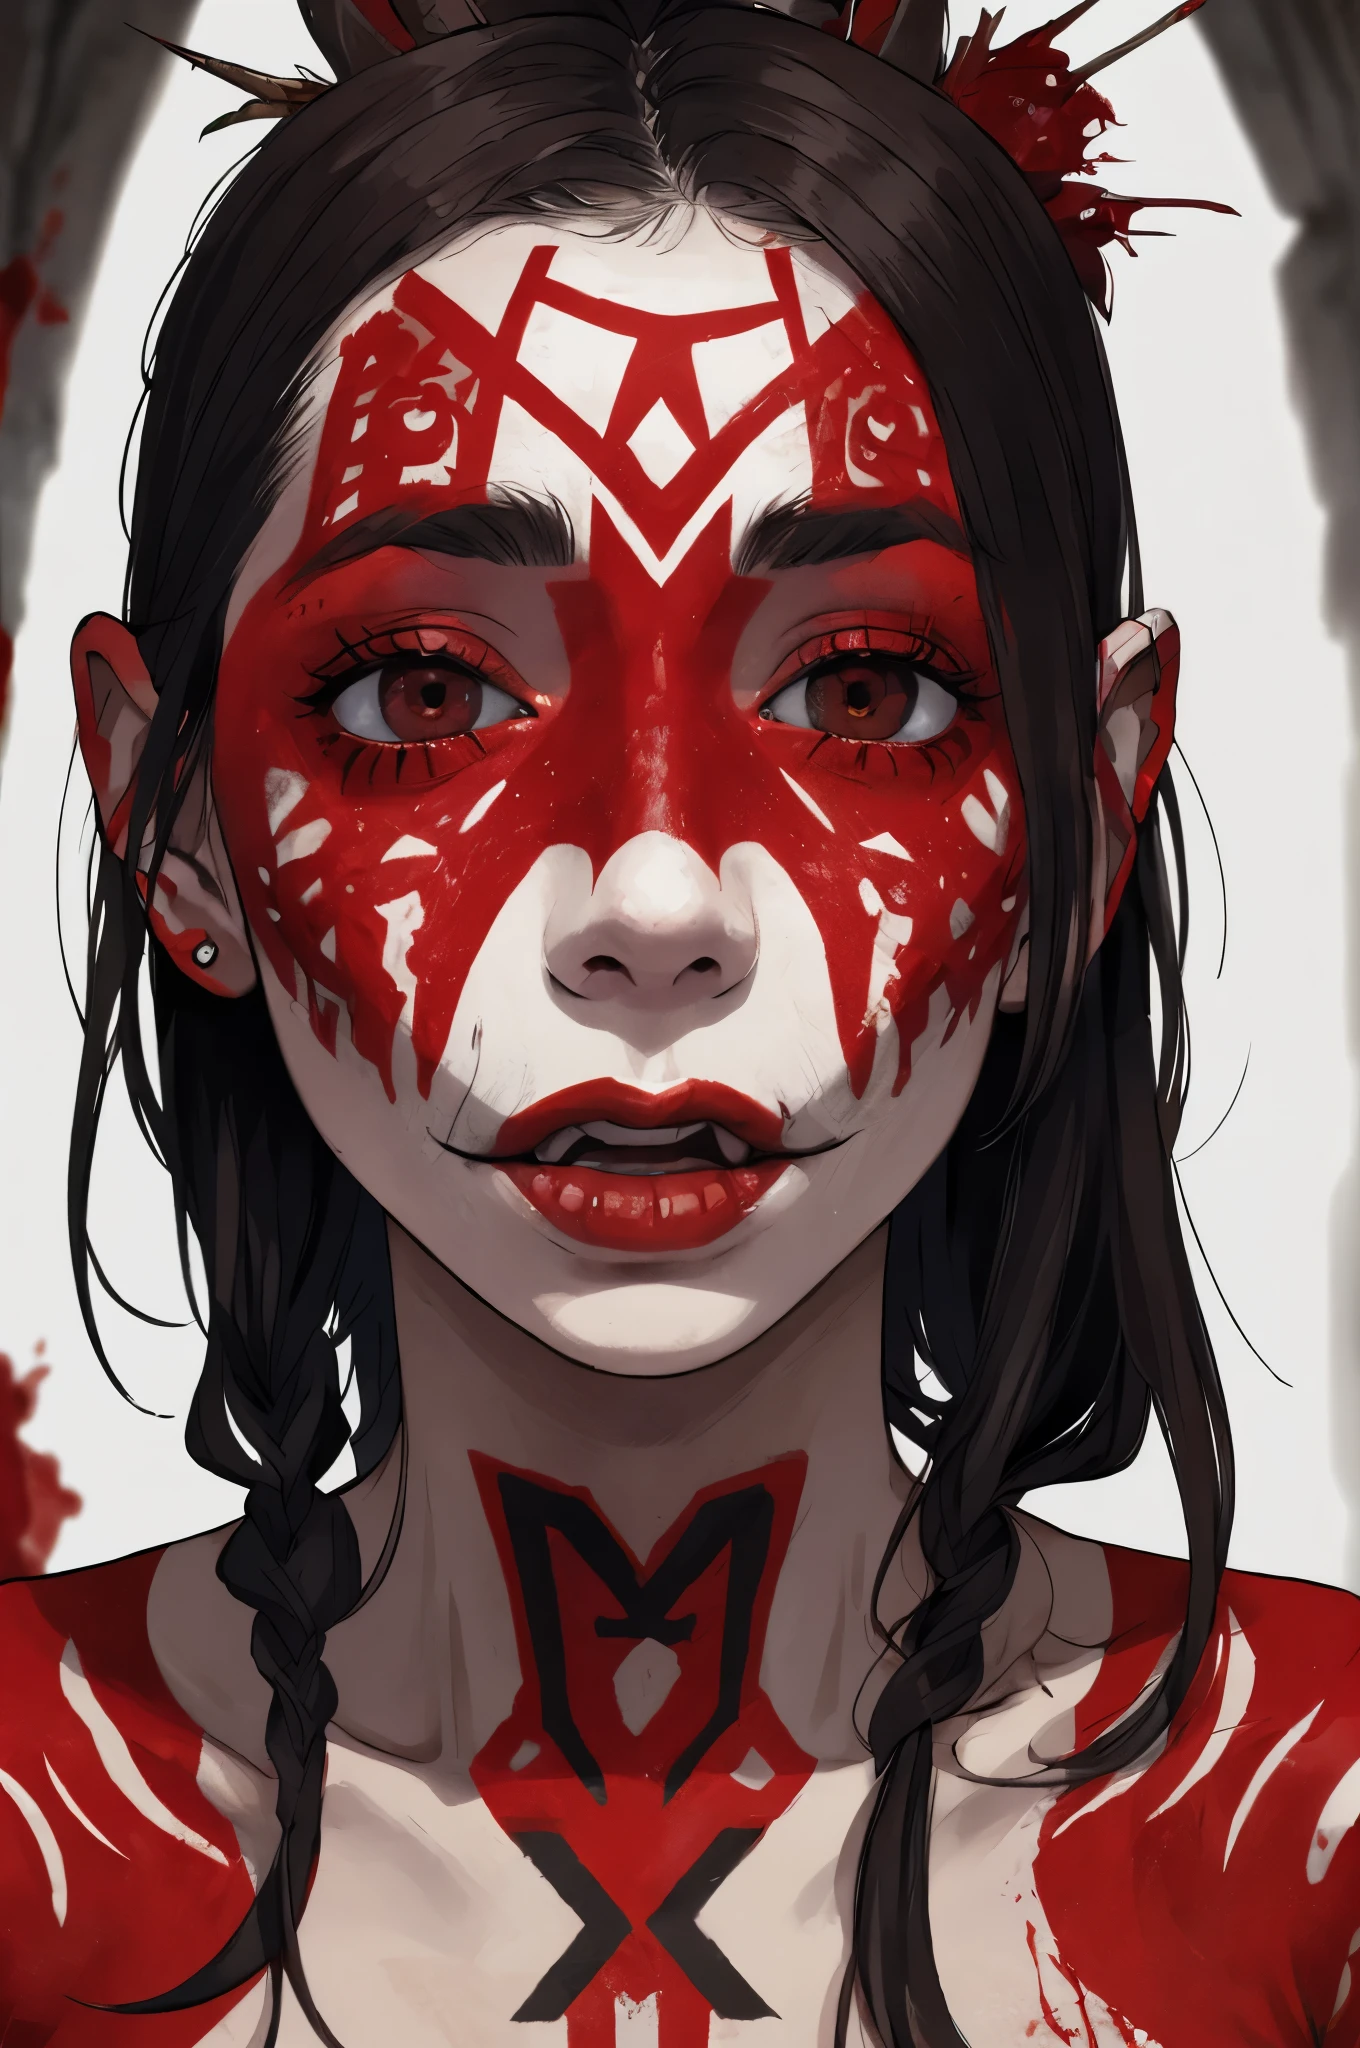 Retrato, Mulher da Tribo Canibal viciada em sexo, língua veloz,(muitas tatuagens tribais vermelhas:1.2), (sangue escorrendo no rosto branco:1.2), (cara sangrenta:1.3), expressão bizarra